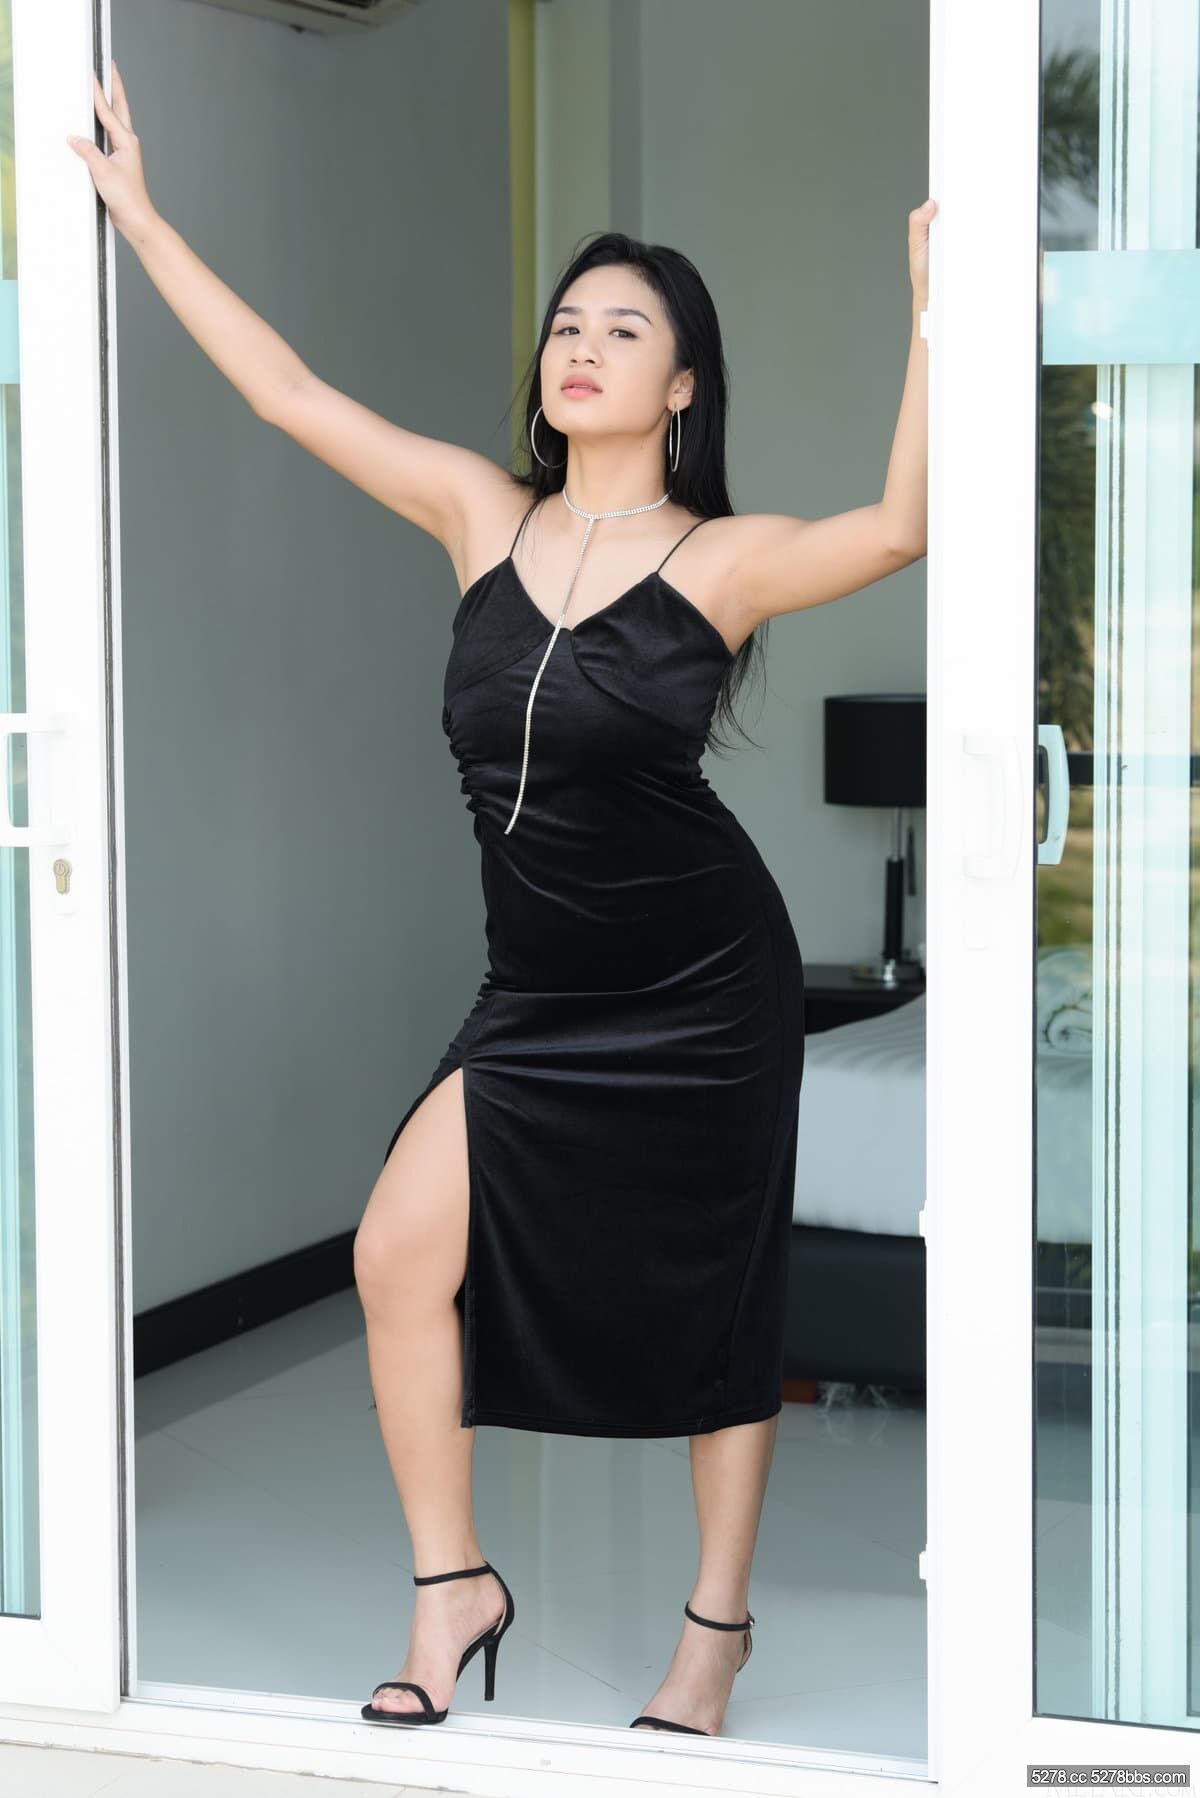 Asian-Babe-Wearing-Black-Dress-4.jpg